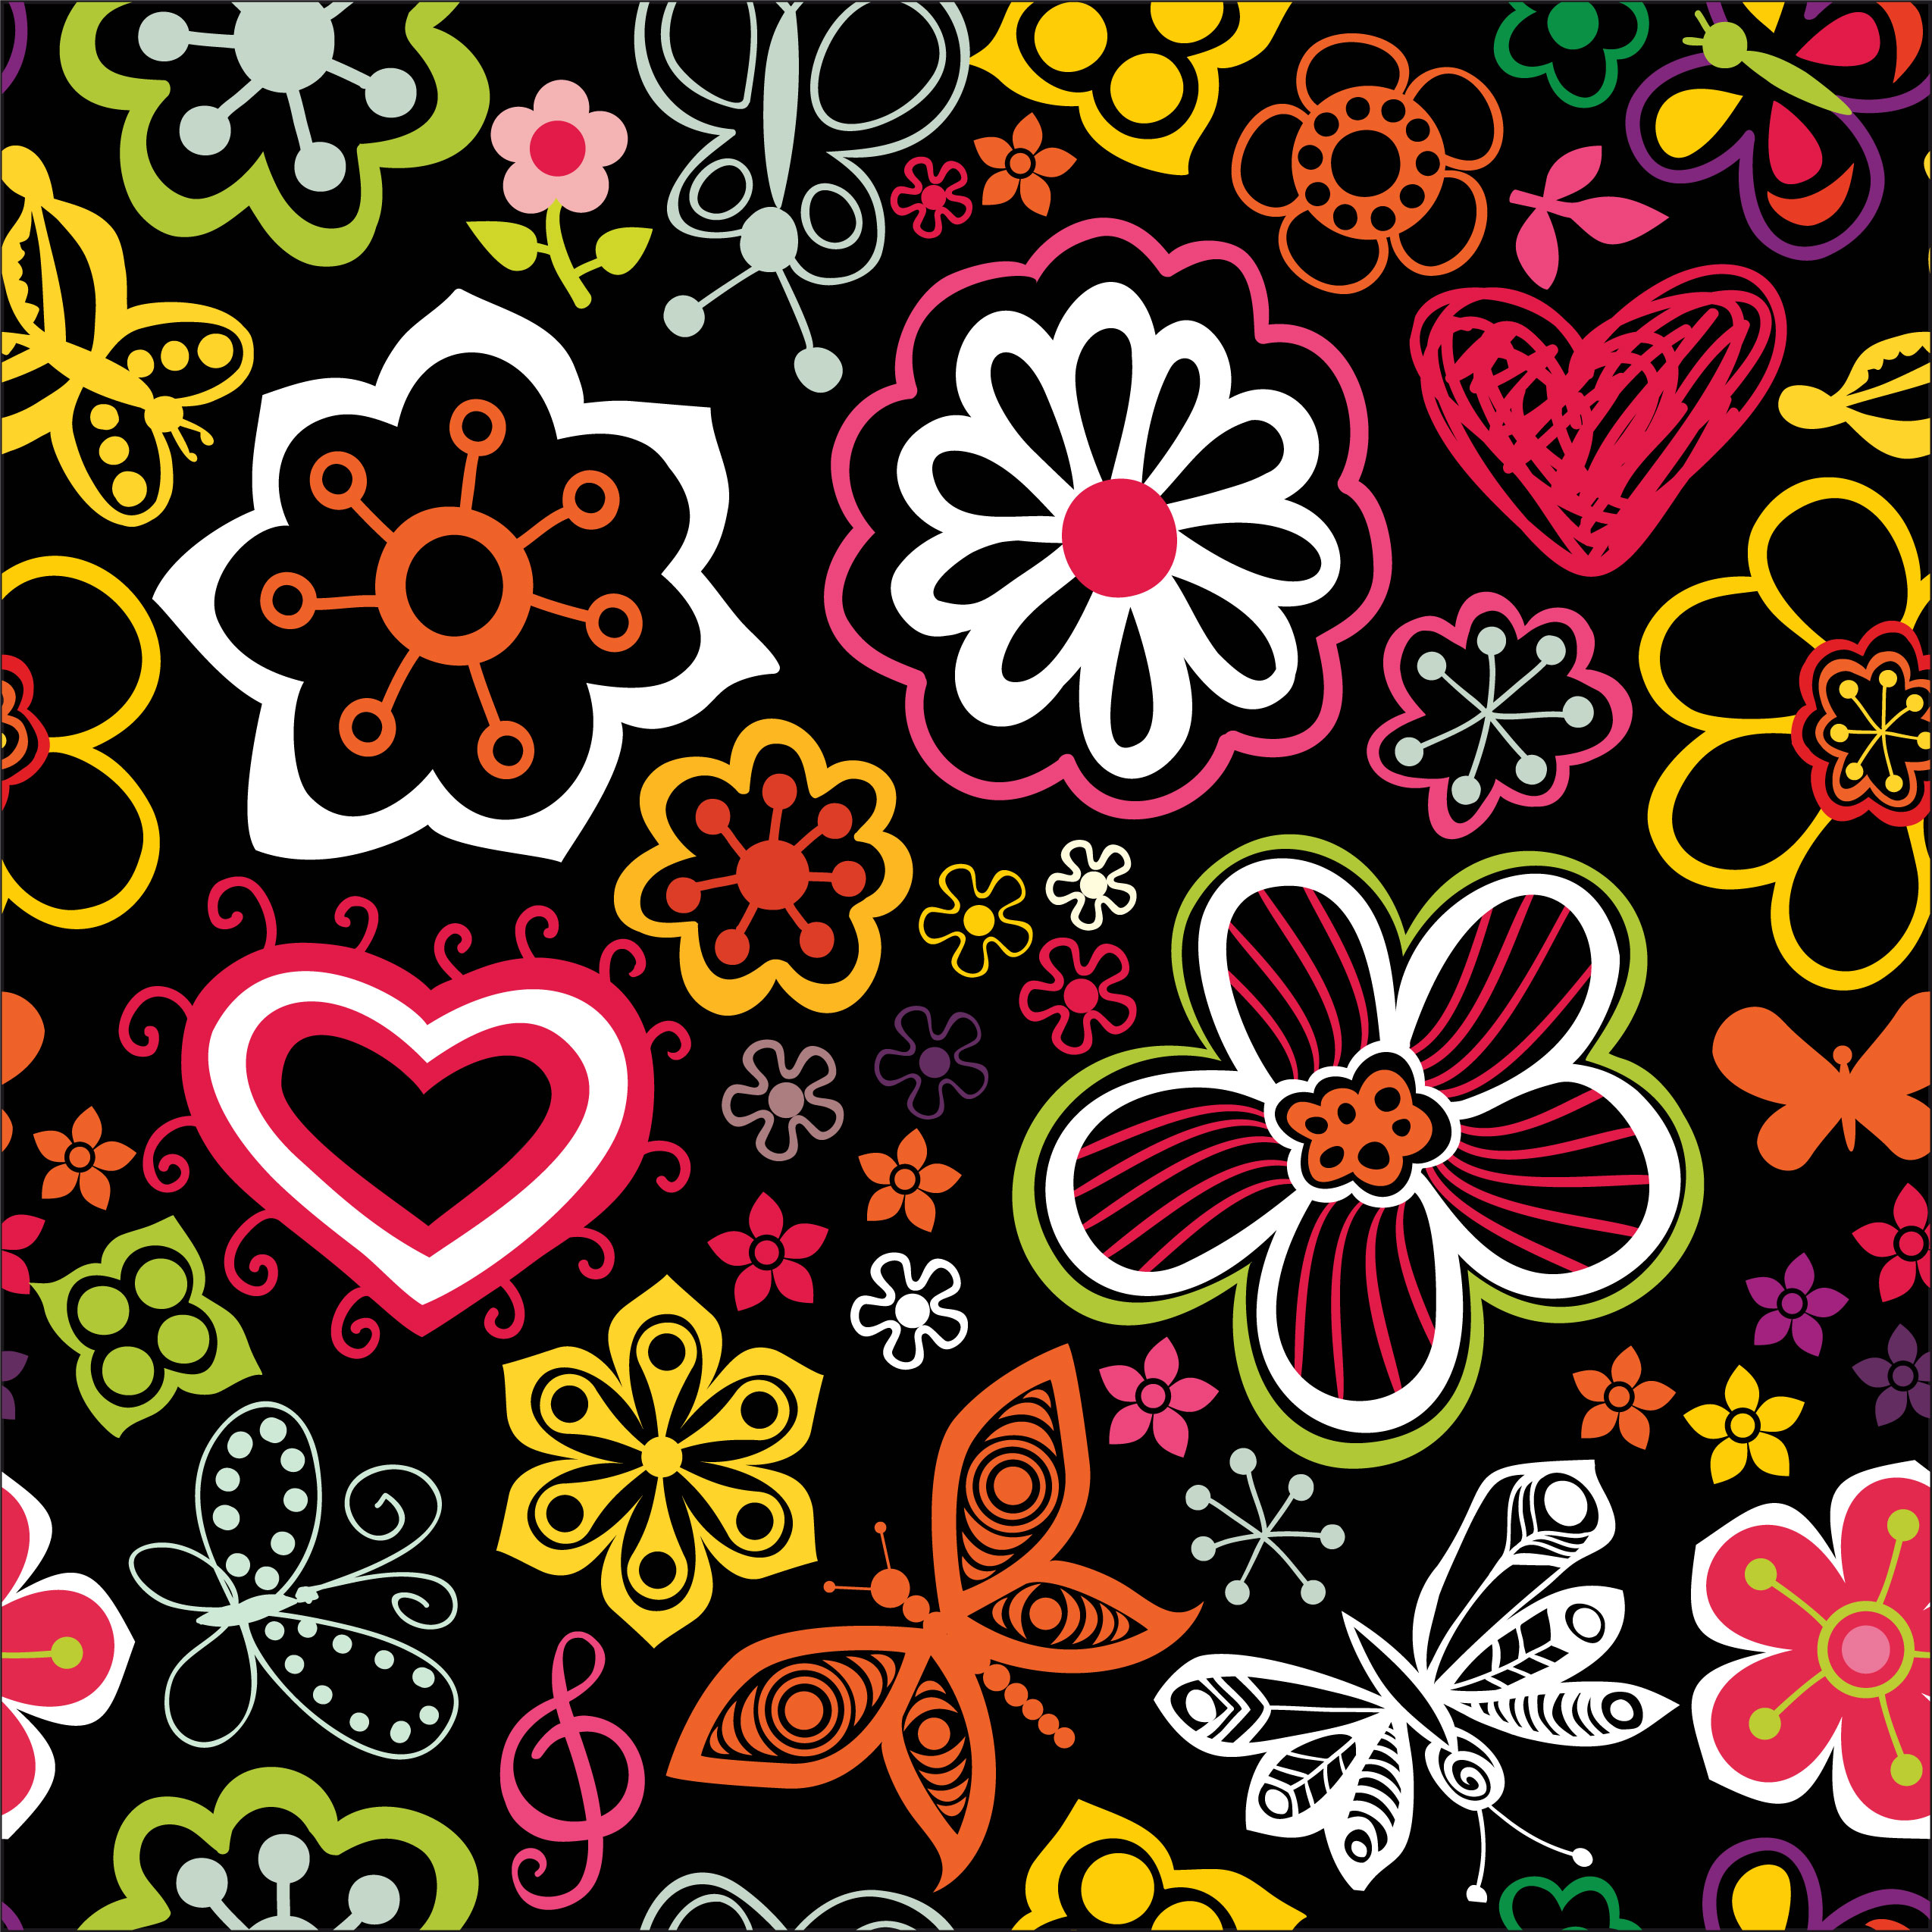 壁紙 背景イラスト 花の模様 柄 パターン No 123 カラフル ポップ シック